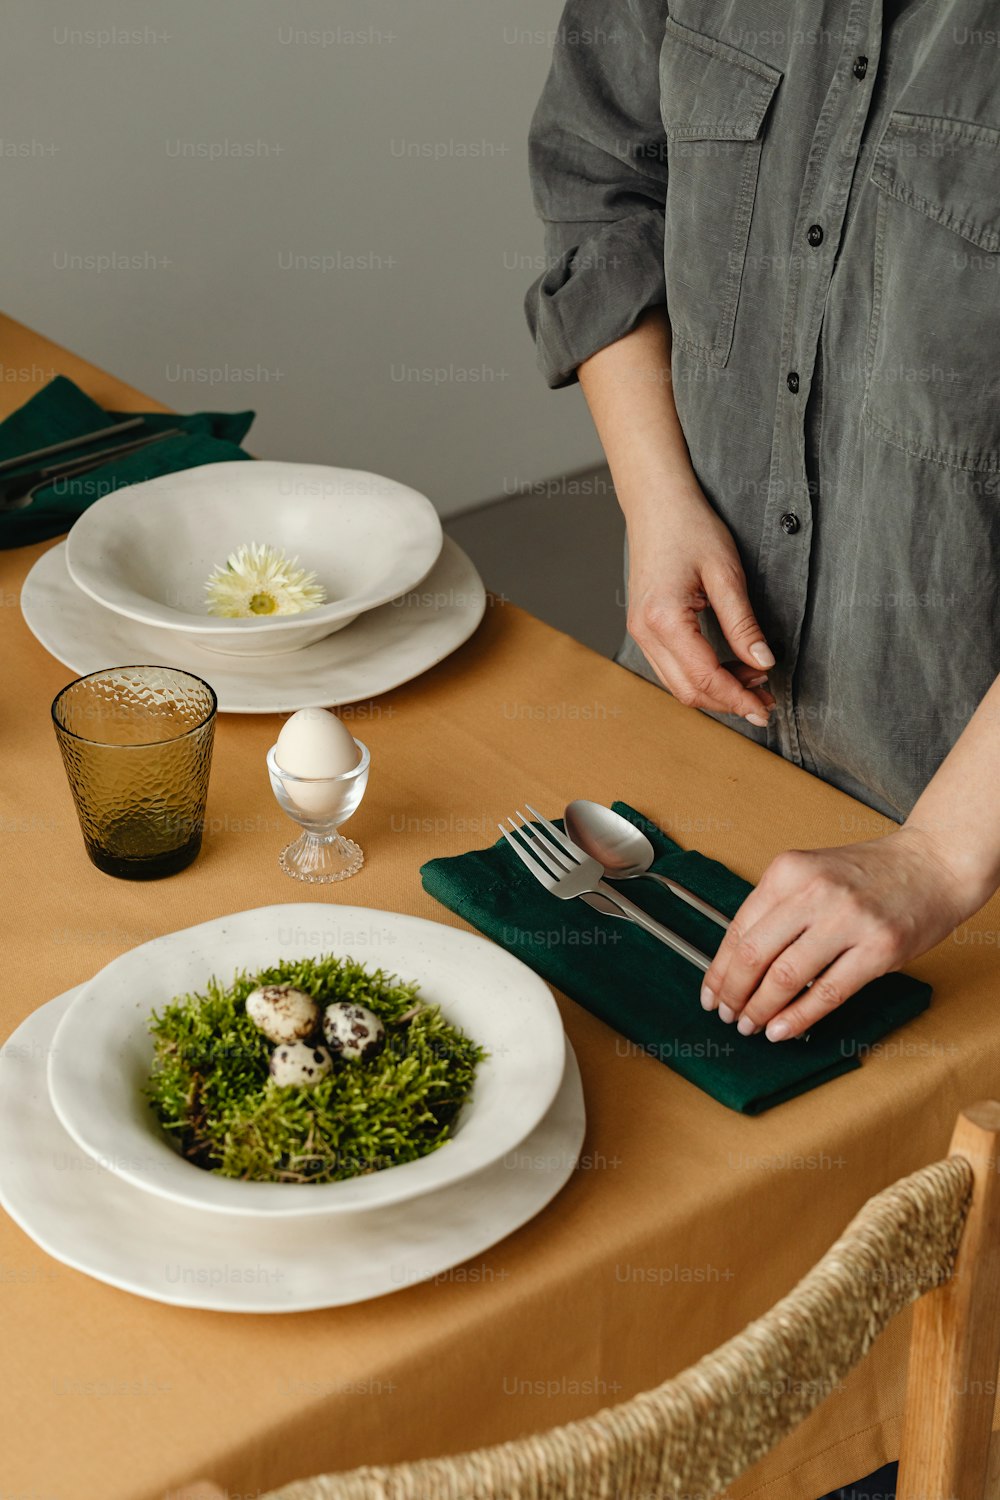 Una persona parada en una mesa con un plato de comida